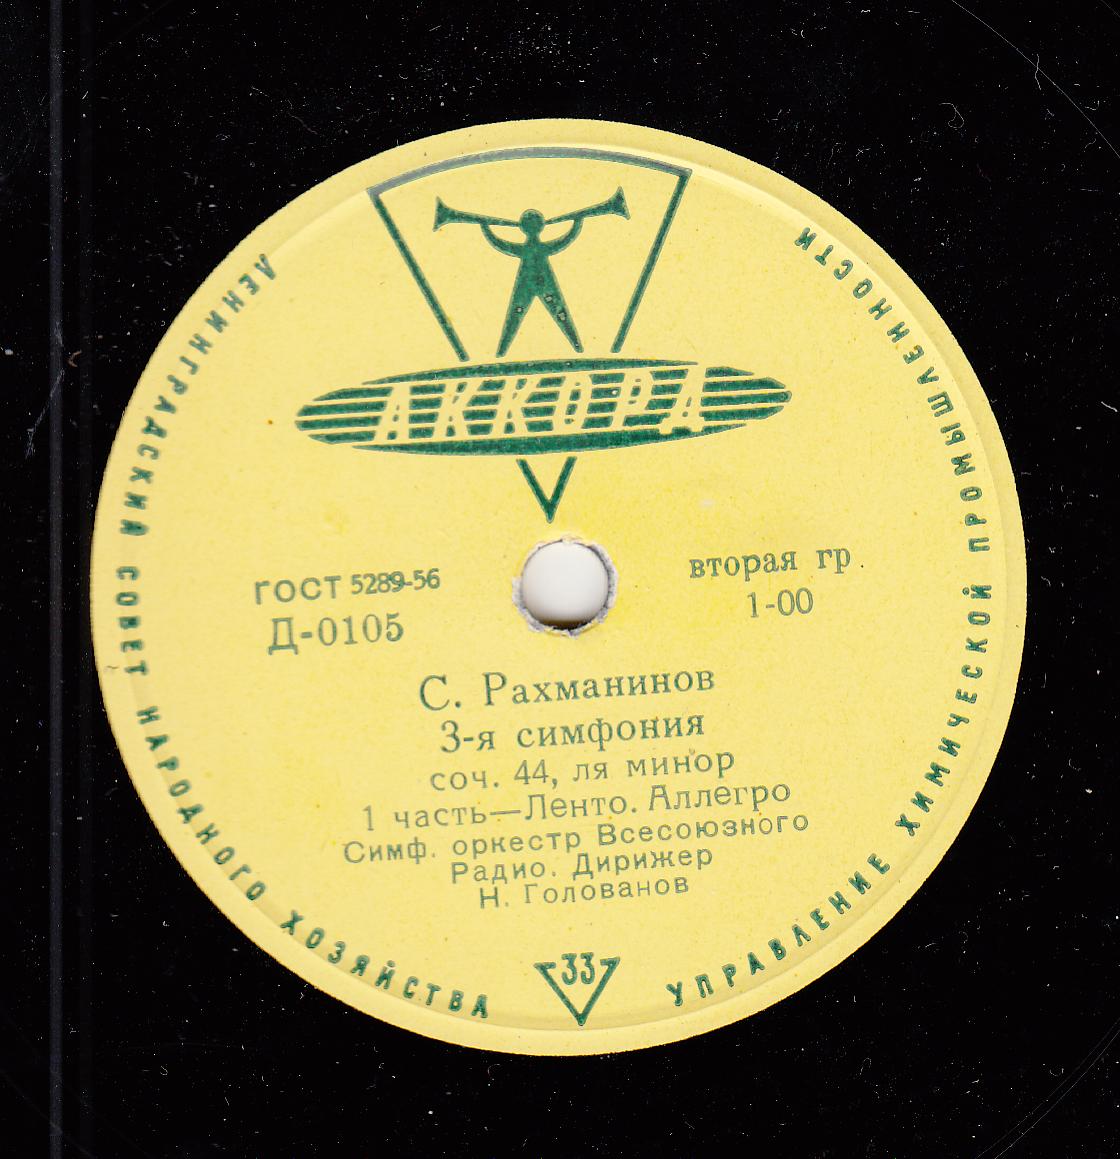 С. РАХМАНИНОВ (1873–1943): Симфония №3 ля минор, соч. 44 (Н. Голованов)